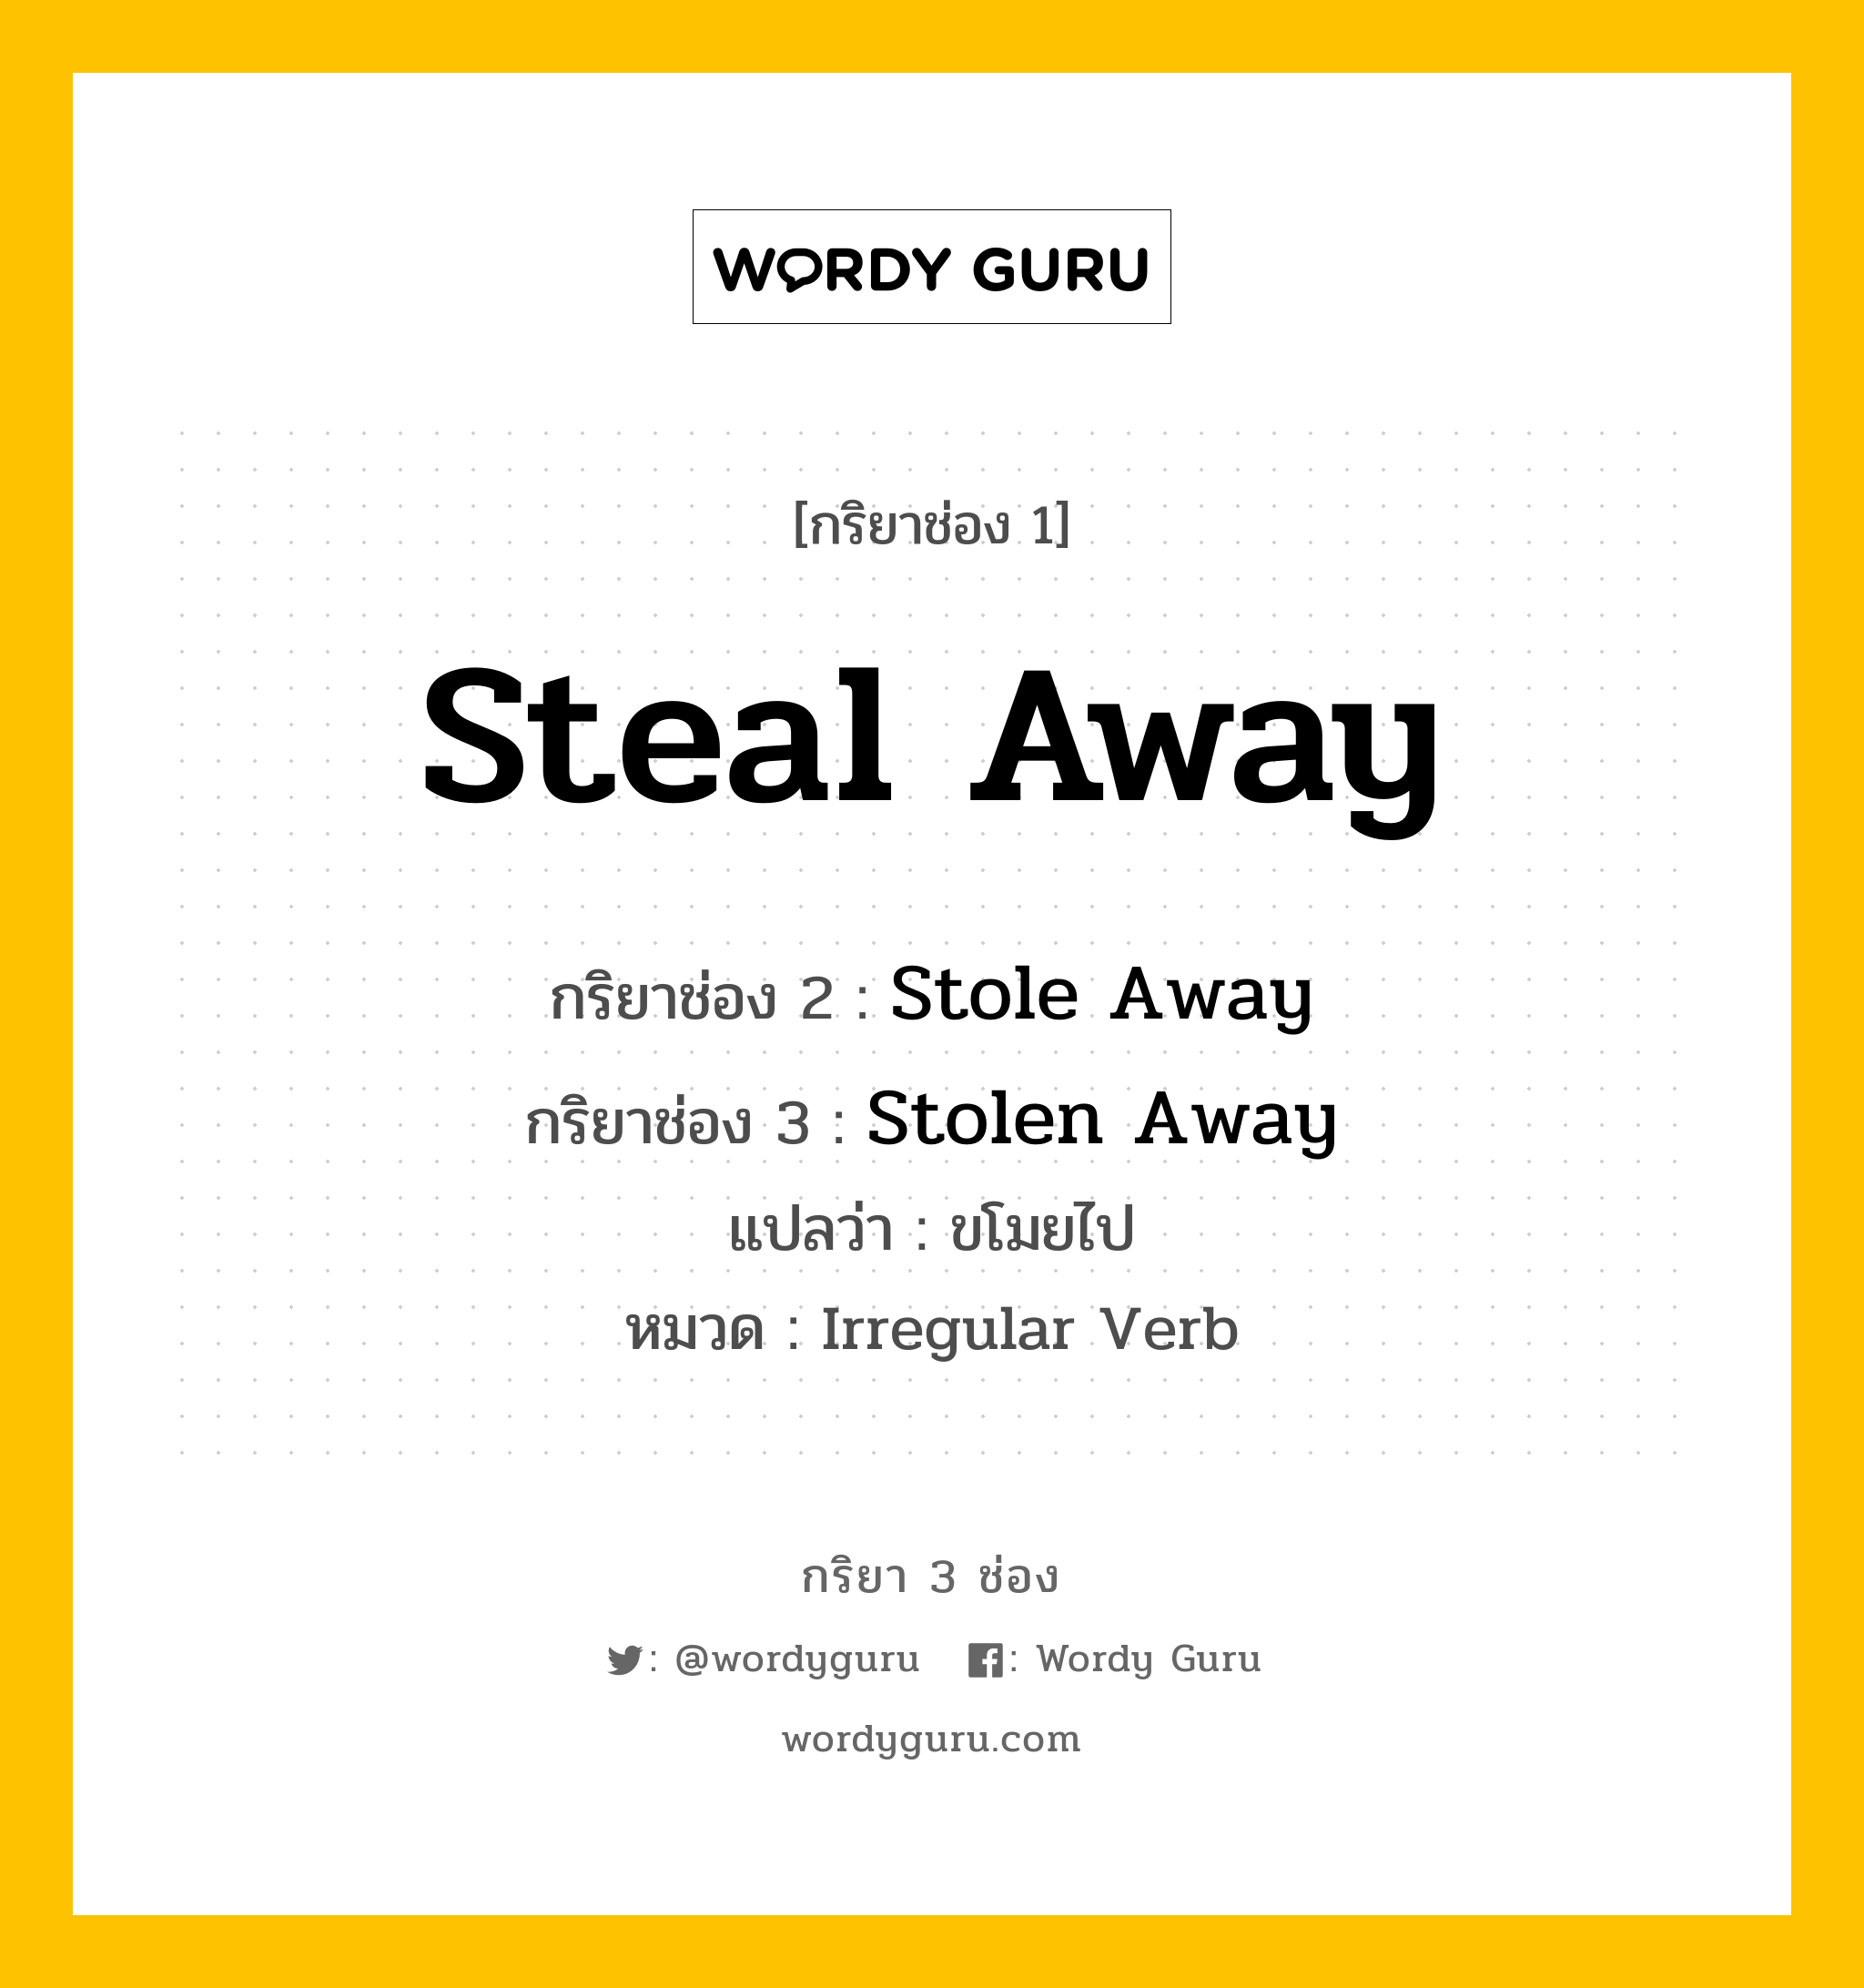 กริยา 3 ช่อง ของ Steal Away คืออะไร? มาดูคำอ่าน คำแปลกันเลย, กริยาช่อง 1 Steal Away กริยาช่อง 2 Stole Away กริยาช่อง 3 Stolen Away แปลว่า ขโมยไป หมวด Irregular Verb หมวด Irregular Verb